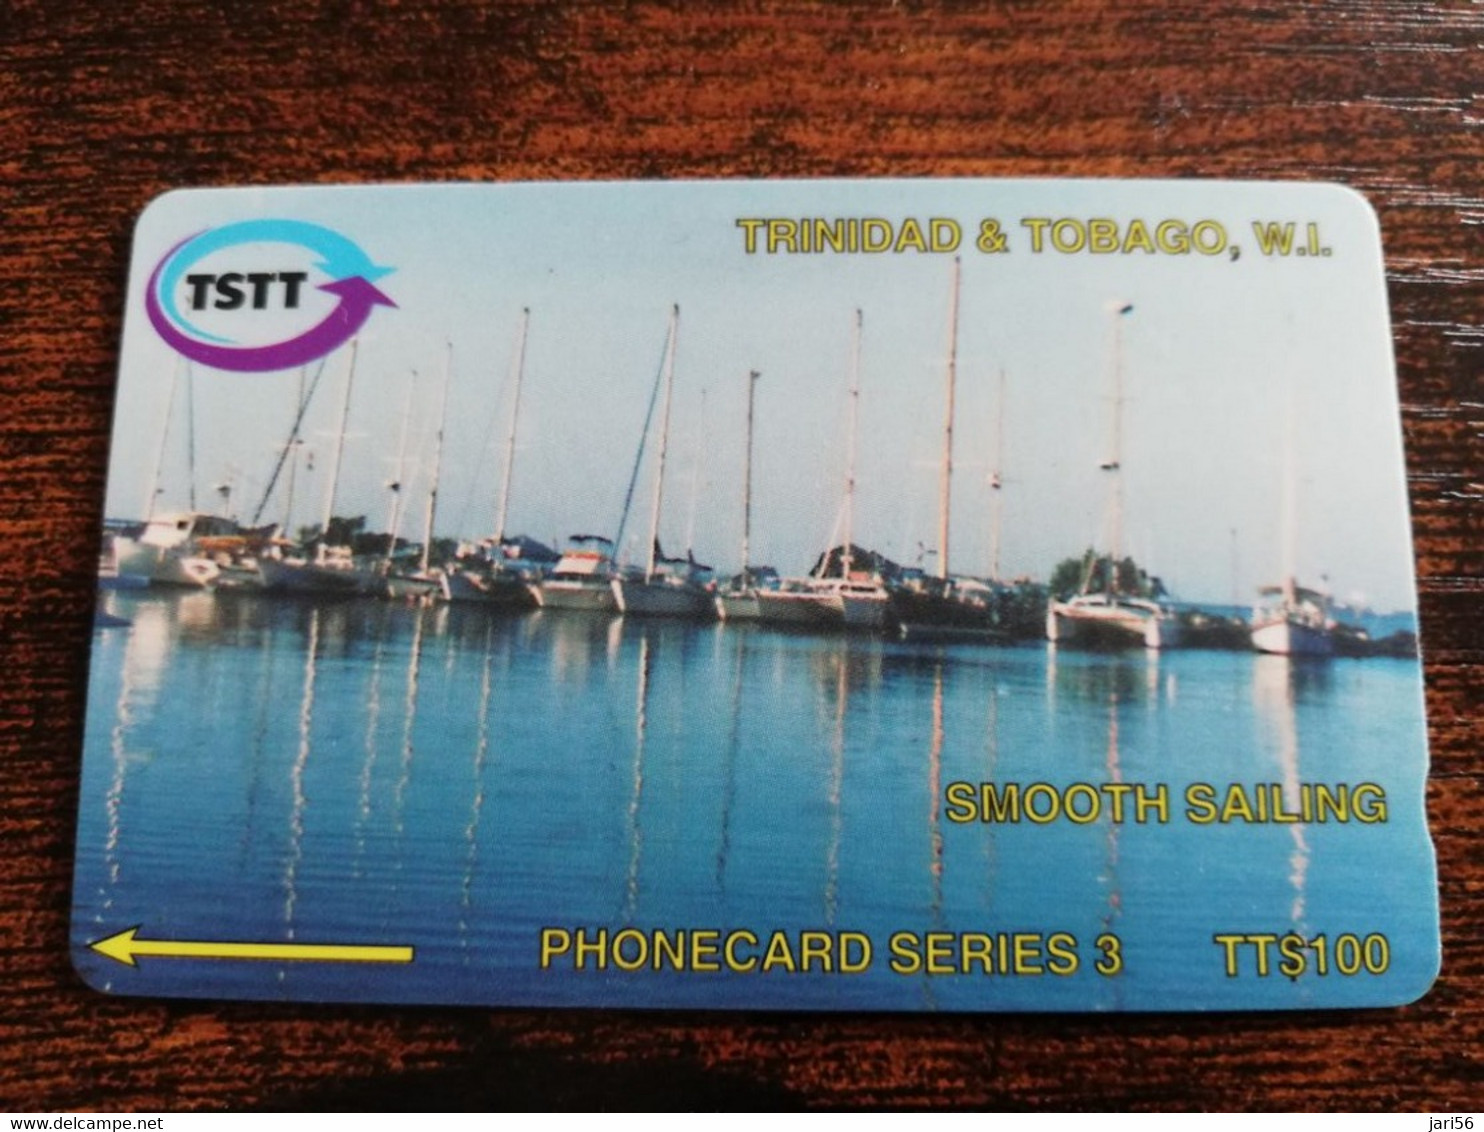 TRINIDAD & TOBAGO  GPT CARD    $100,-  205CCTA   SMOOTH SAILING             Fine Used Card        ** 8902** - Trinidad & Tobago